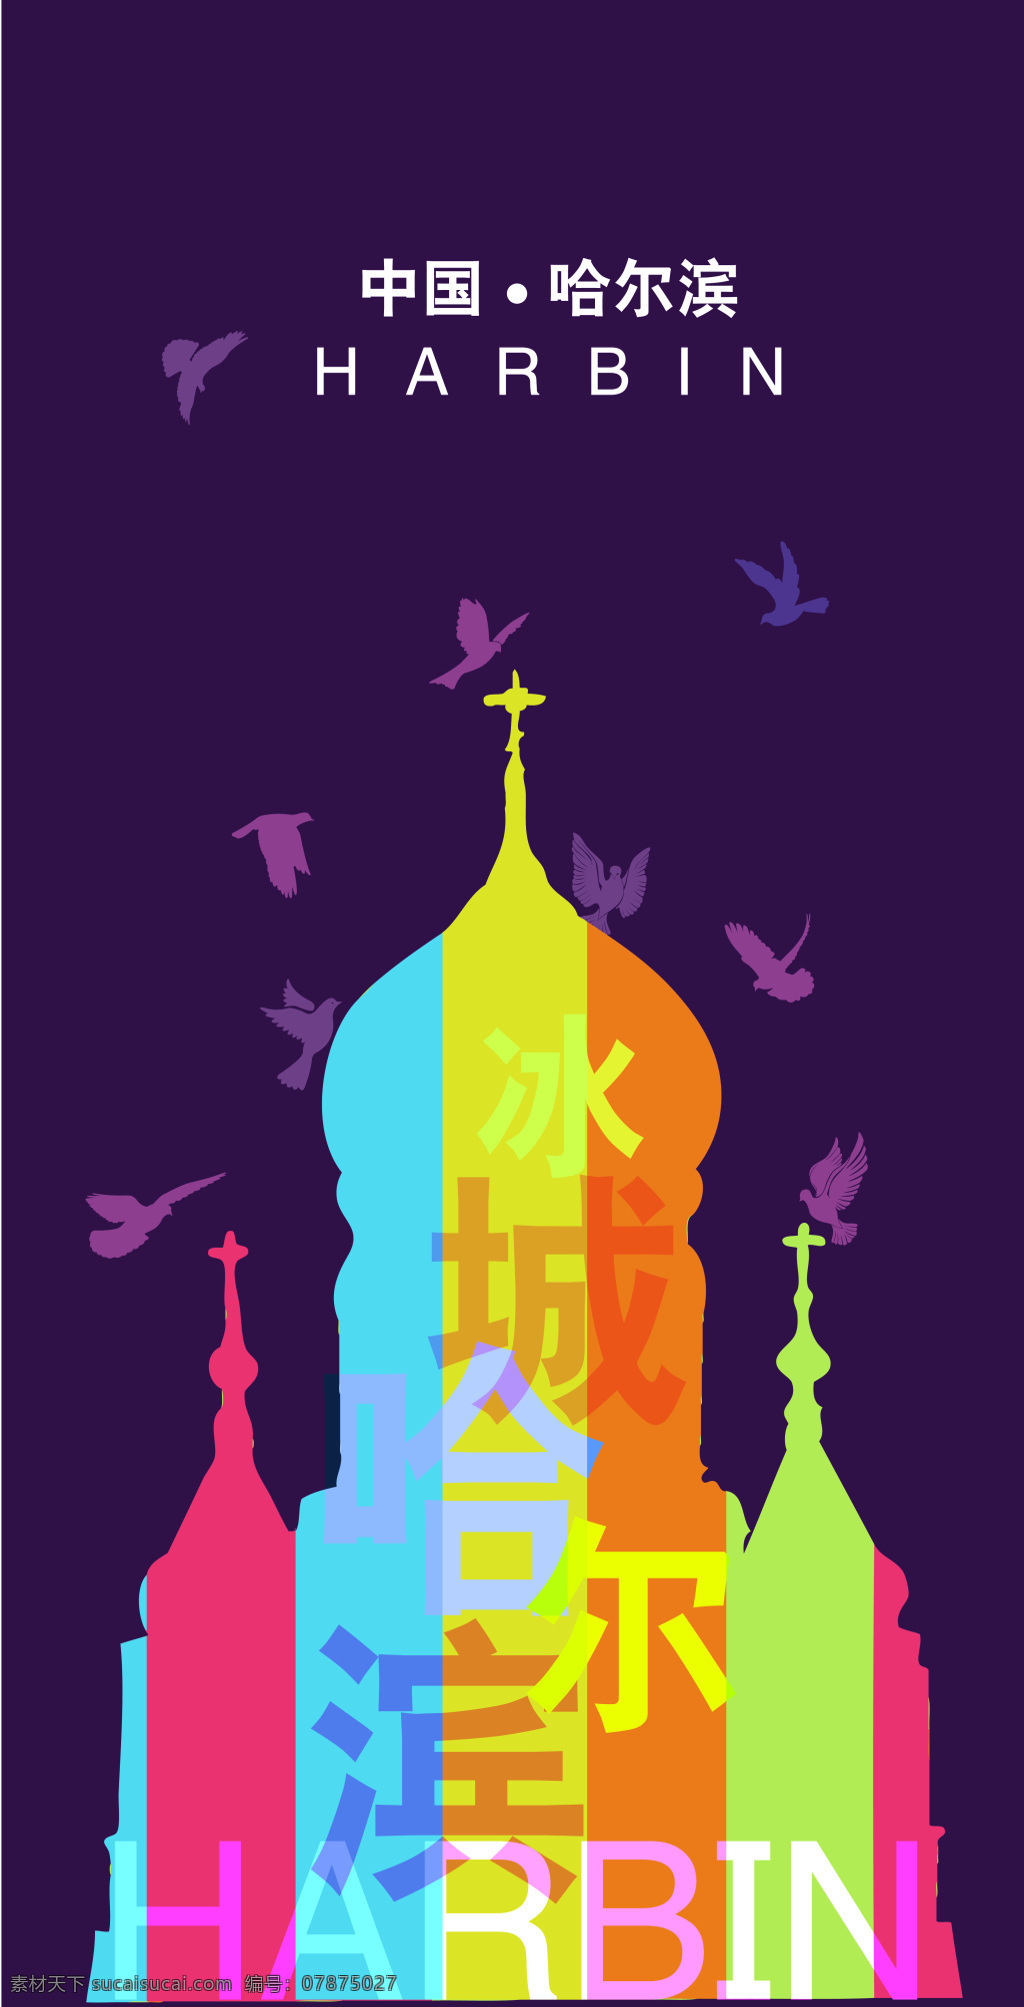 哈尔滨 印象 海报 冰城 索菲亚 教堂 和平鸽 蓝色 剪影 欧式建筑 西方建筑